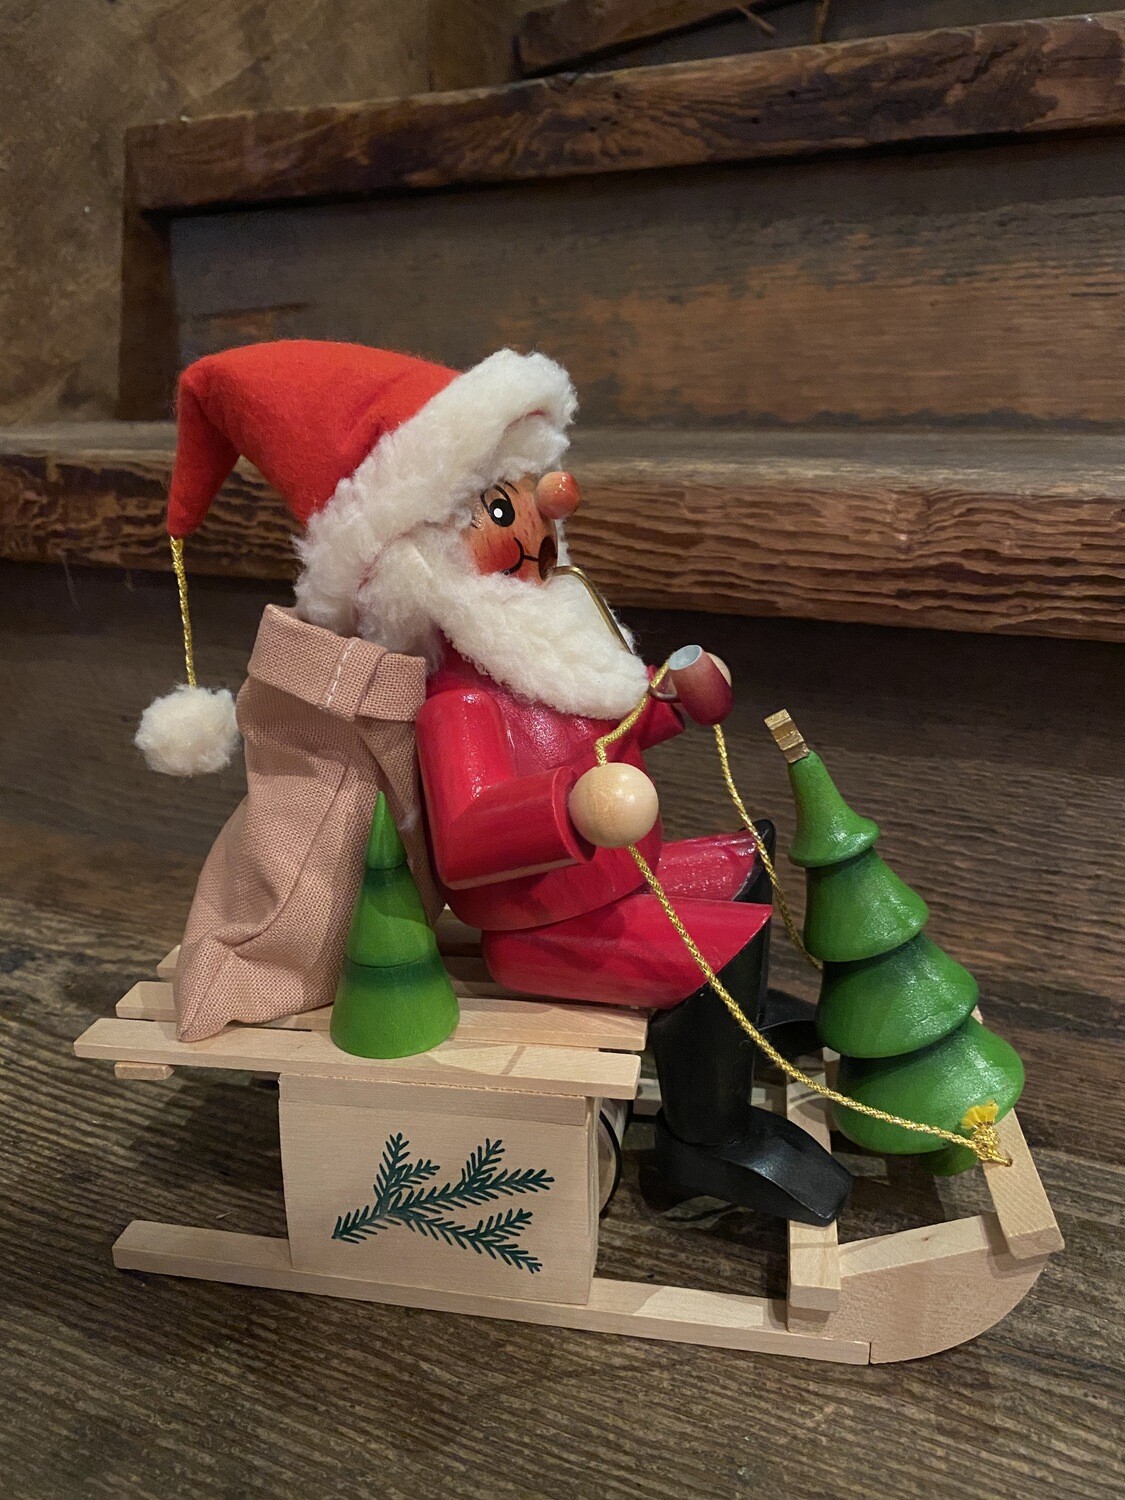 Santa on Sleigh Moving Smoker and Music Box